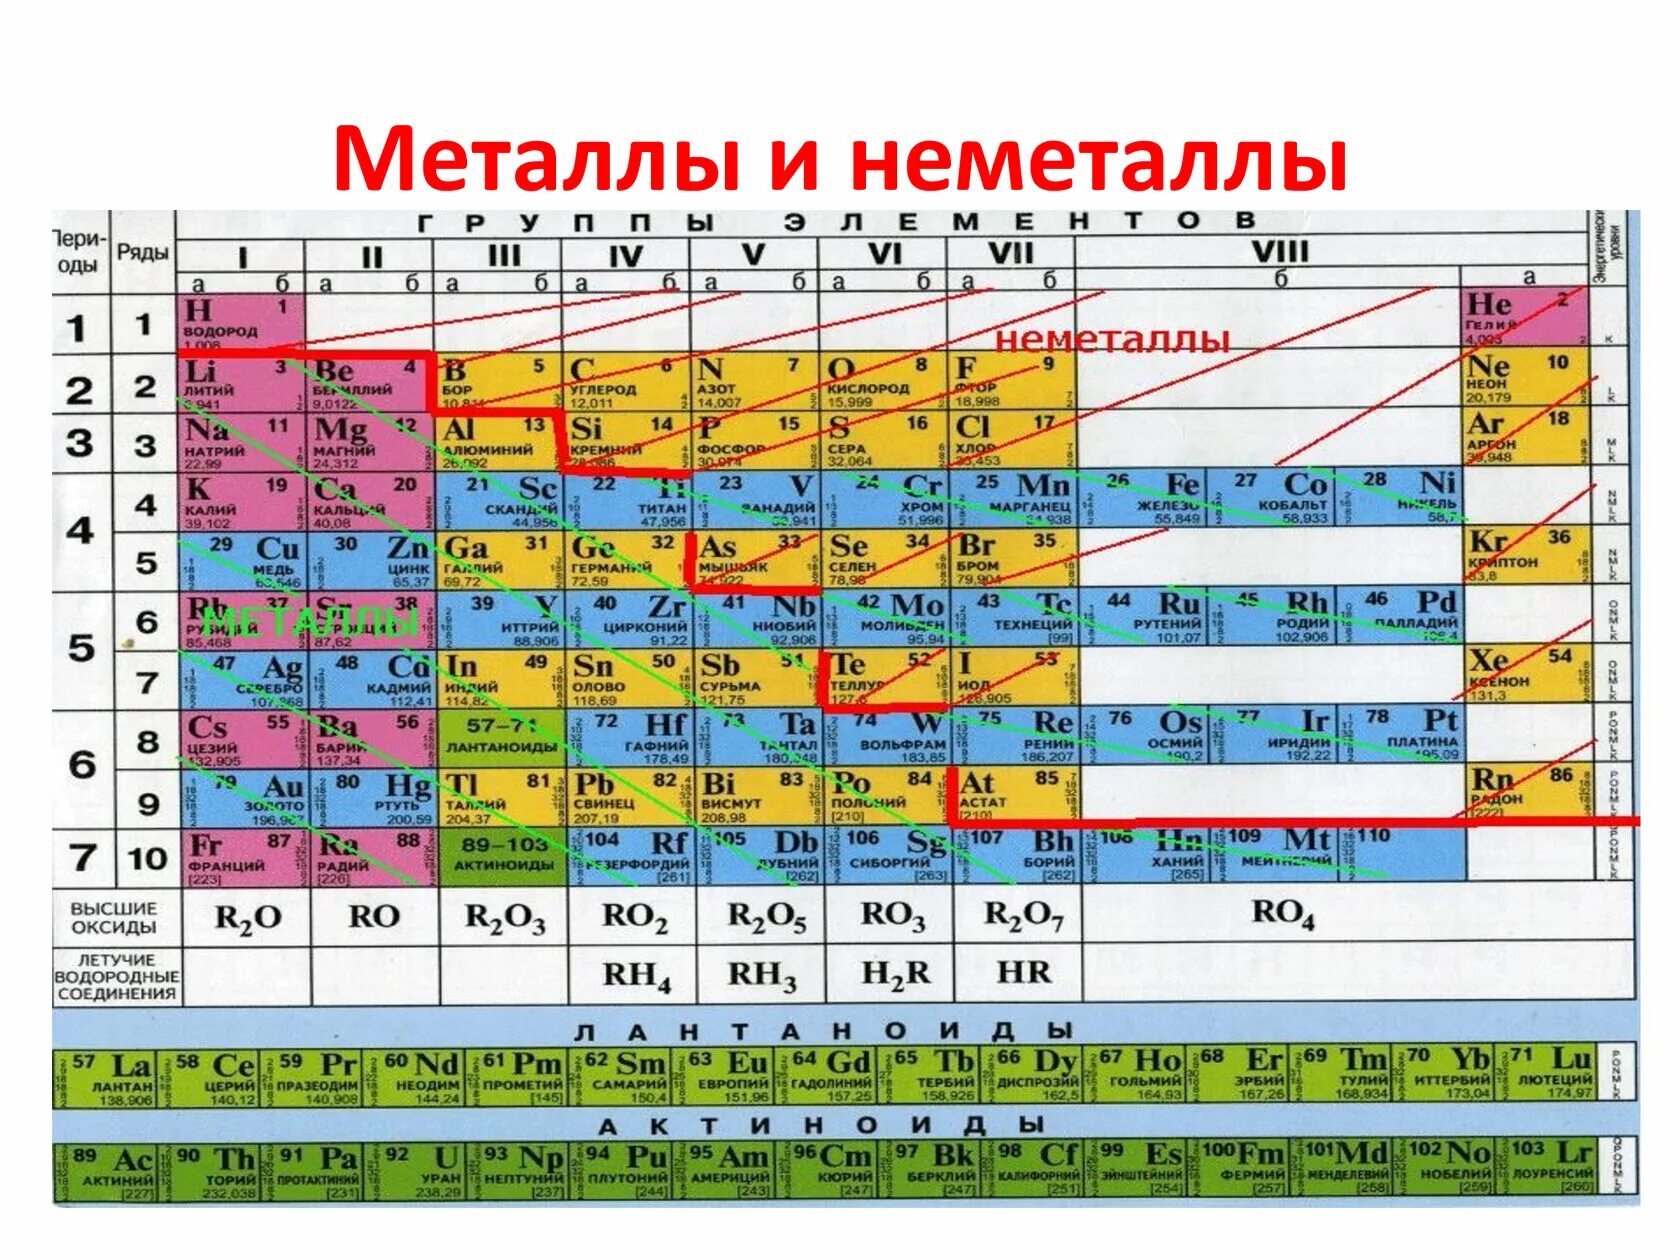 Металл 11 группы. Таблица Менделеева металлы и неметаллы. Химия металлы и неметаллы таблица. Химические элементы металлы и неметаллы. Таблица элементов Менделеева металлы и неметаллы.